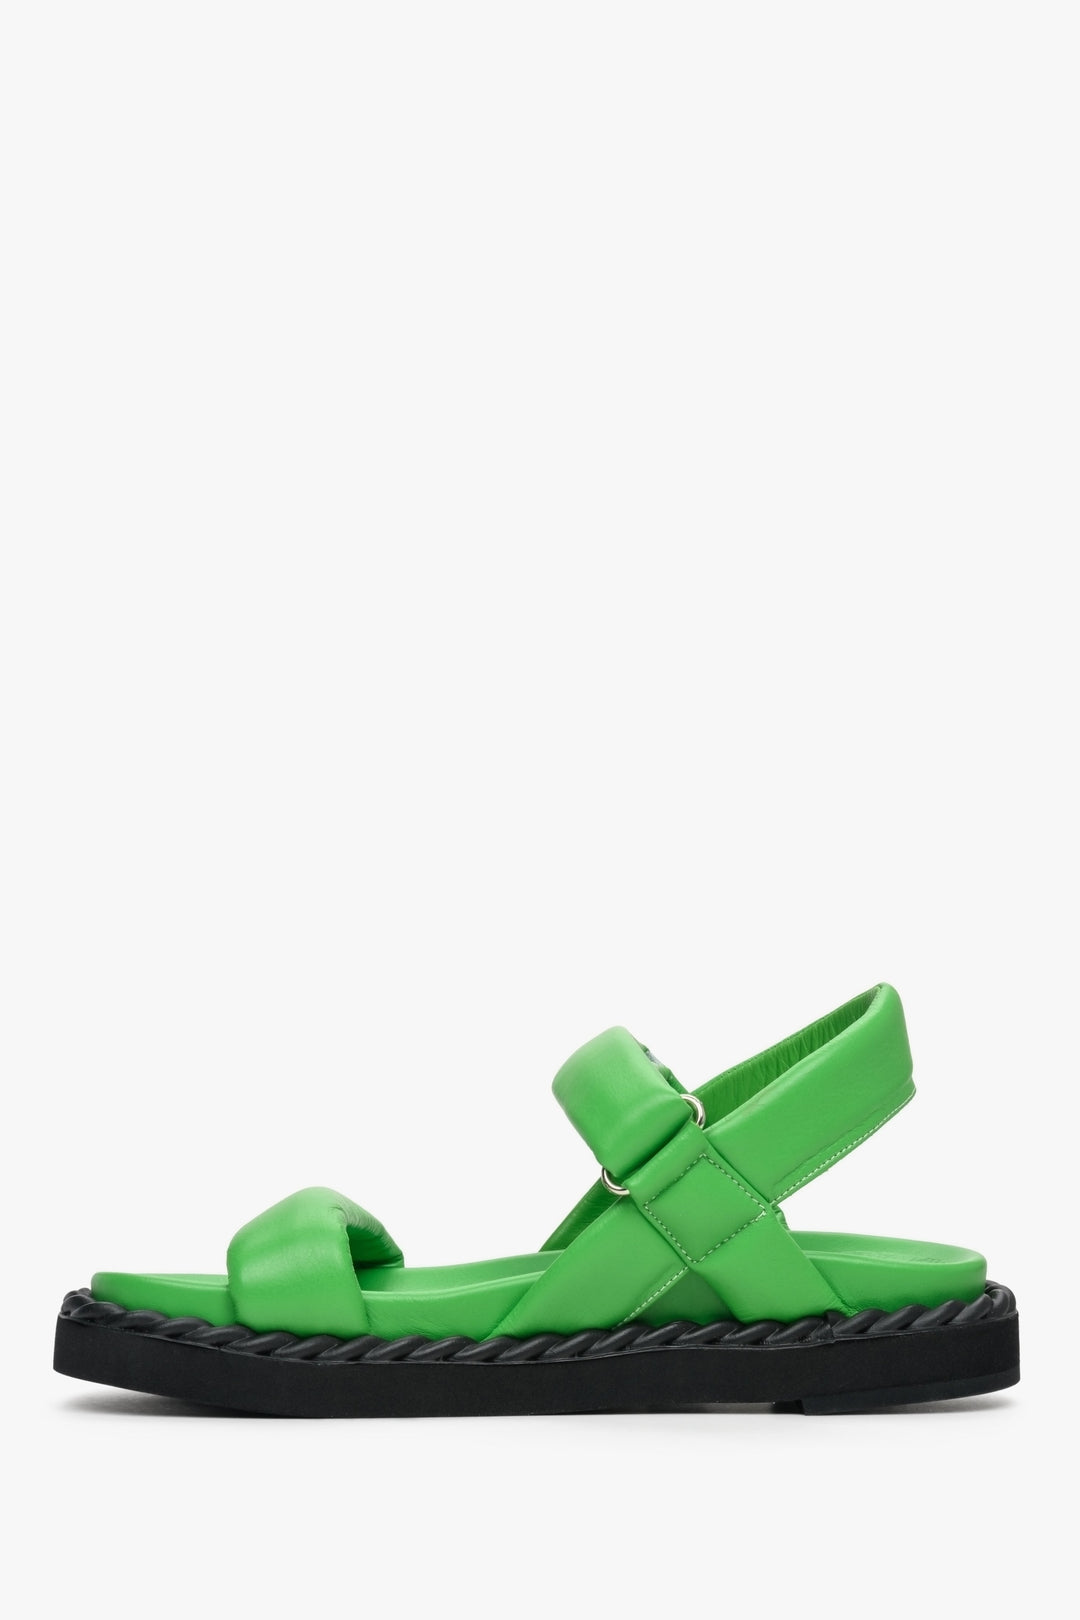 Sandały damskie zielone ze skóry naturalnej Estro na lato - profil obuwia.